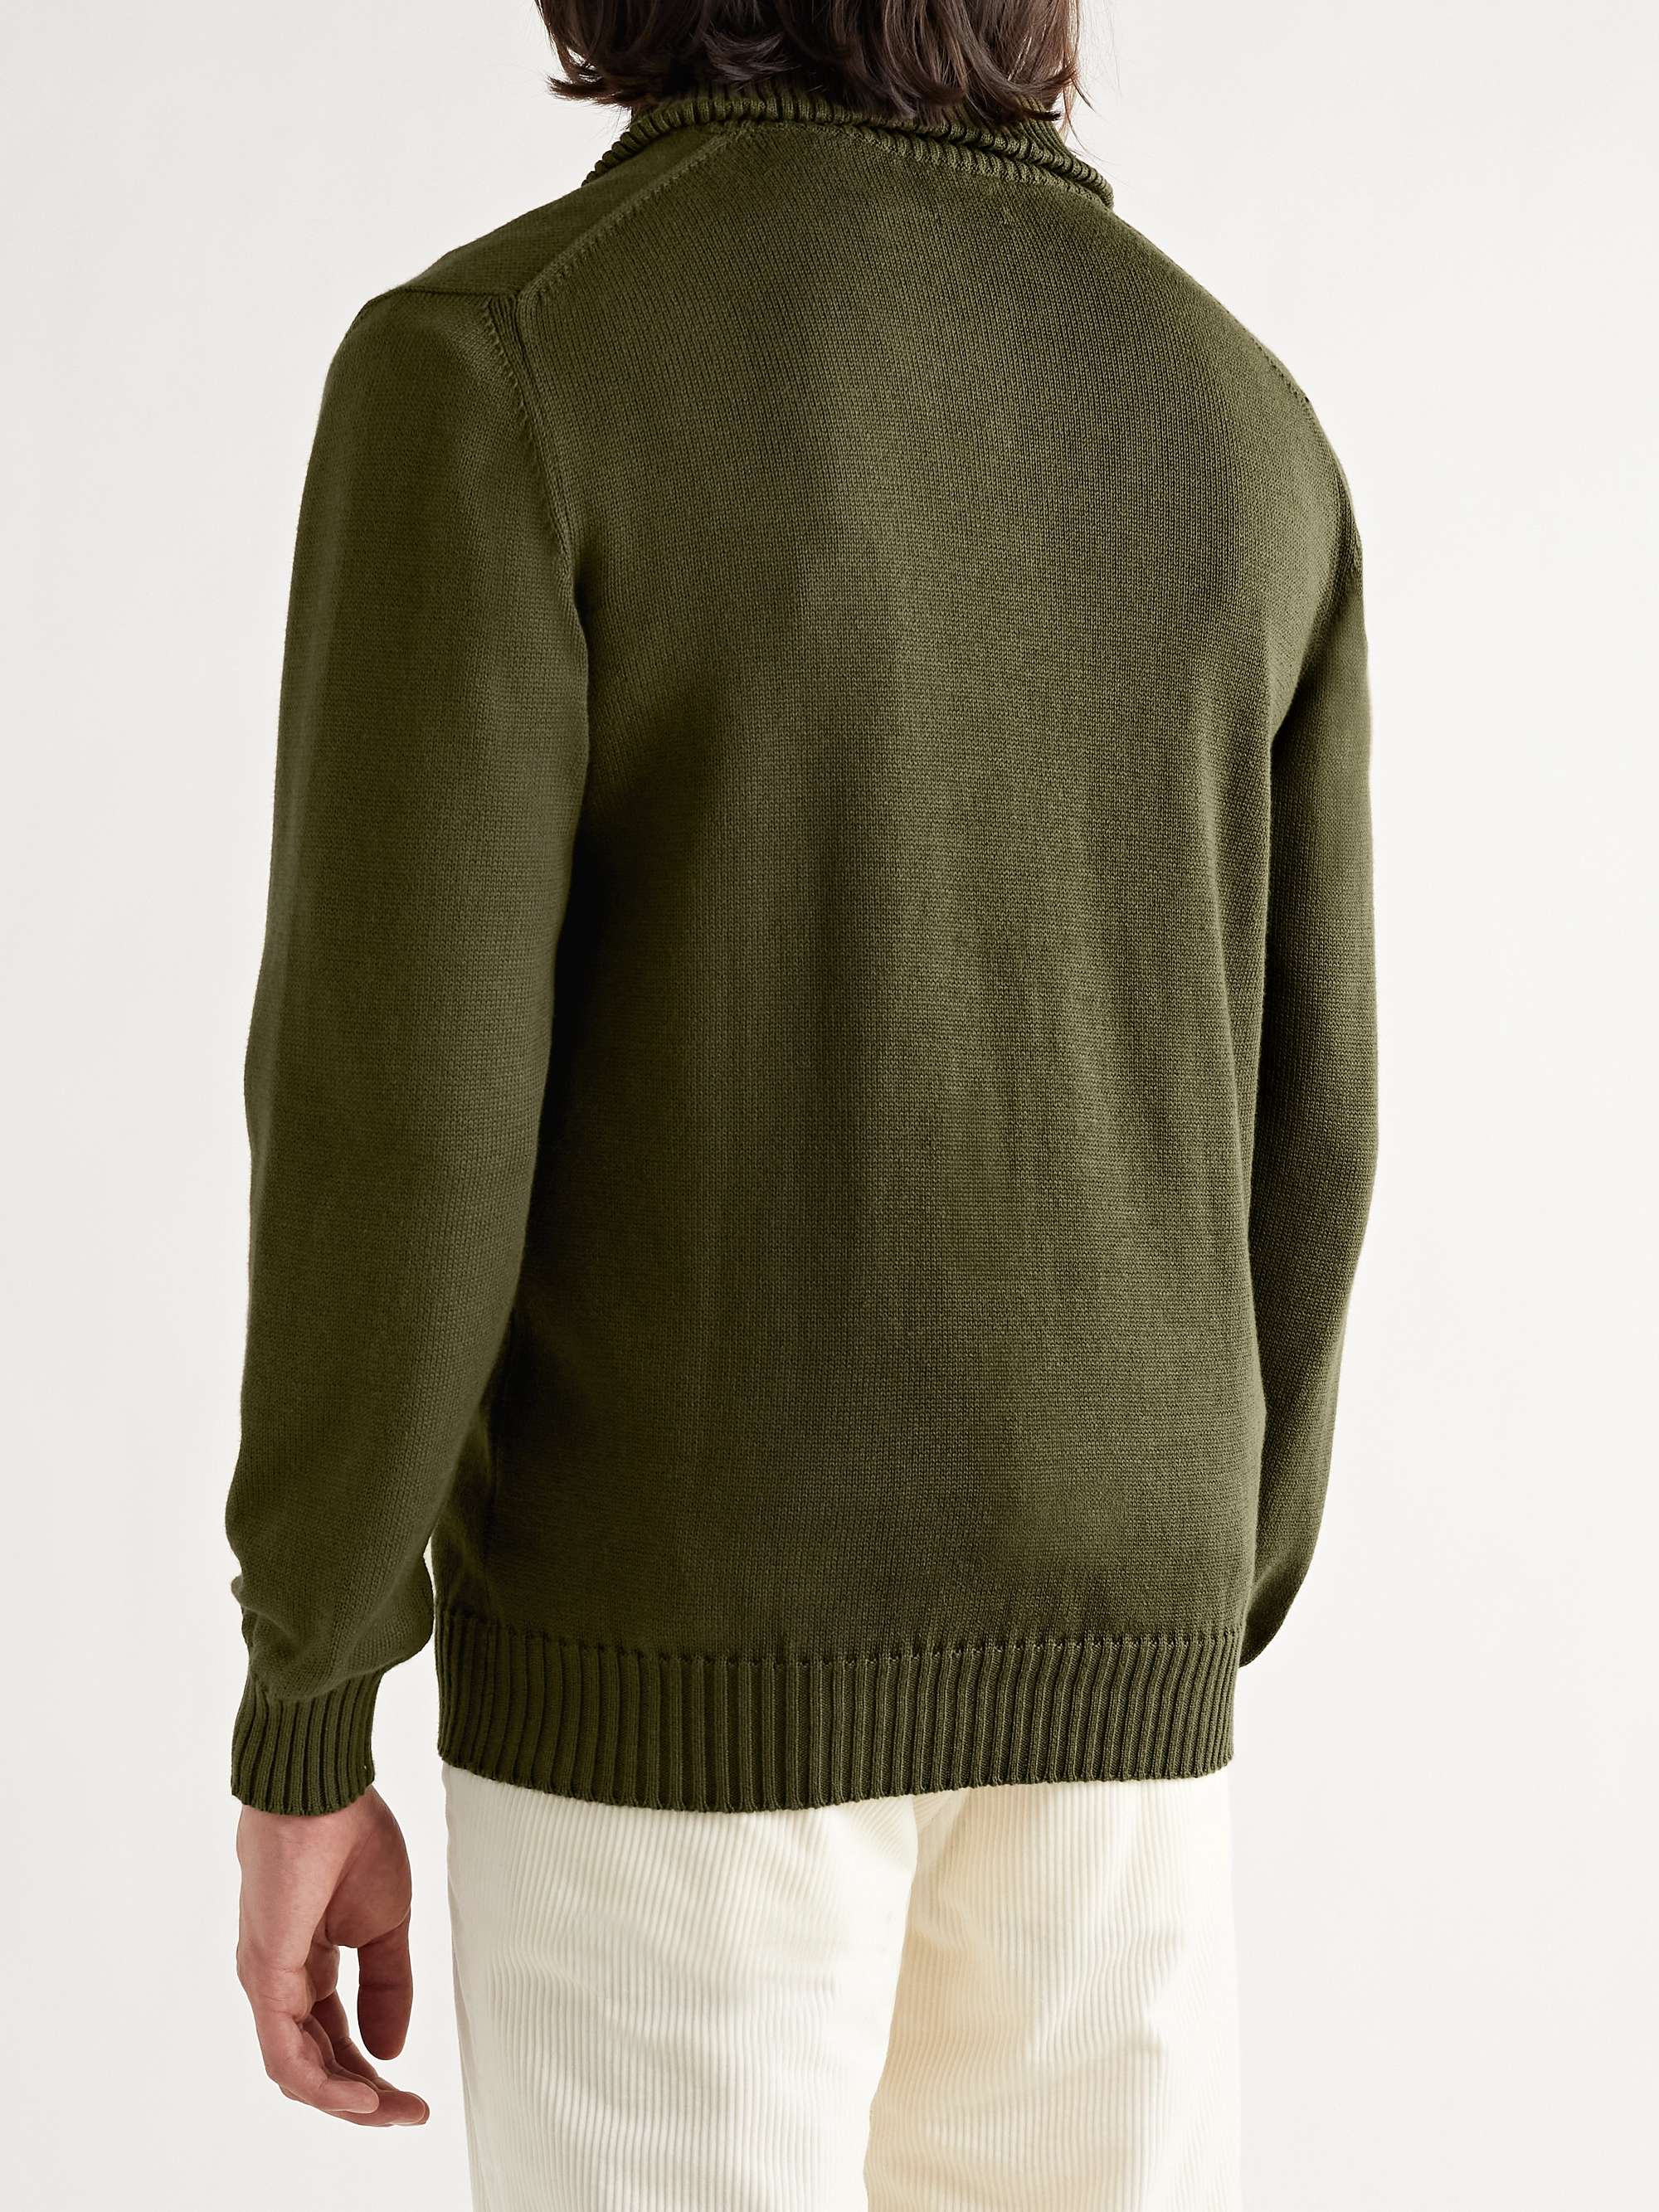 DE BONNE FACTURE Cotton Half-Zip Sweater